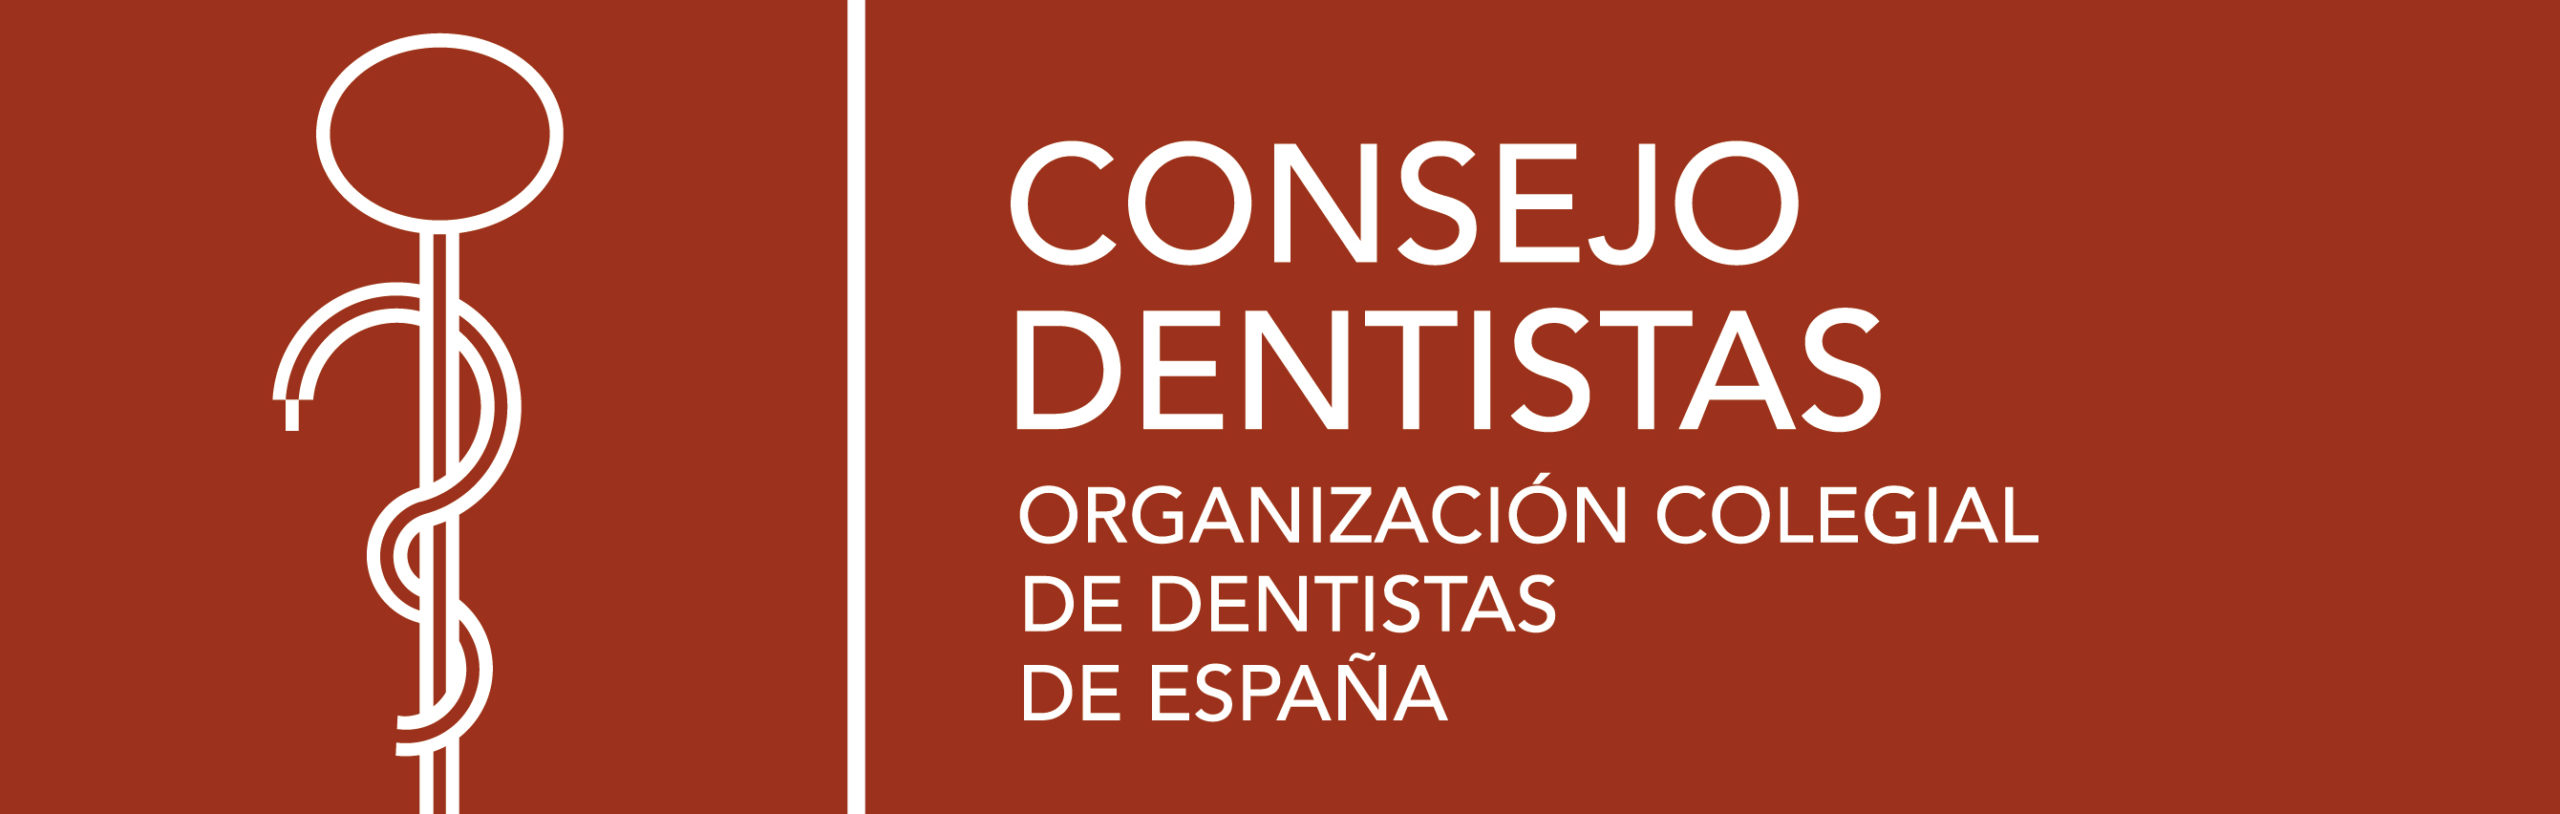 Consejo Dentistas